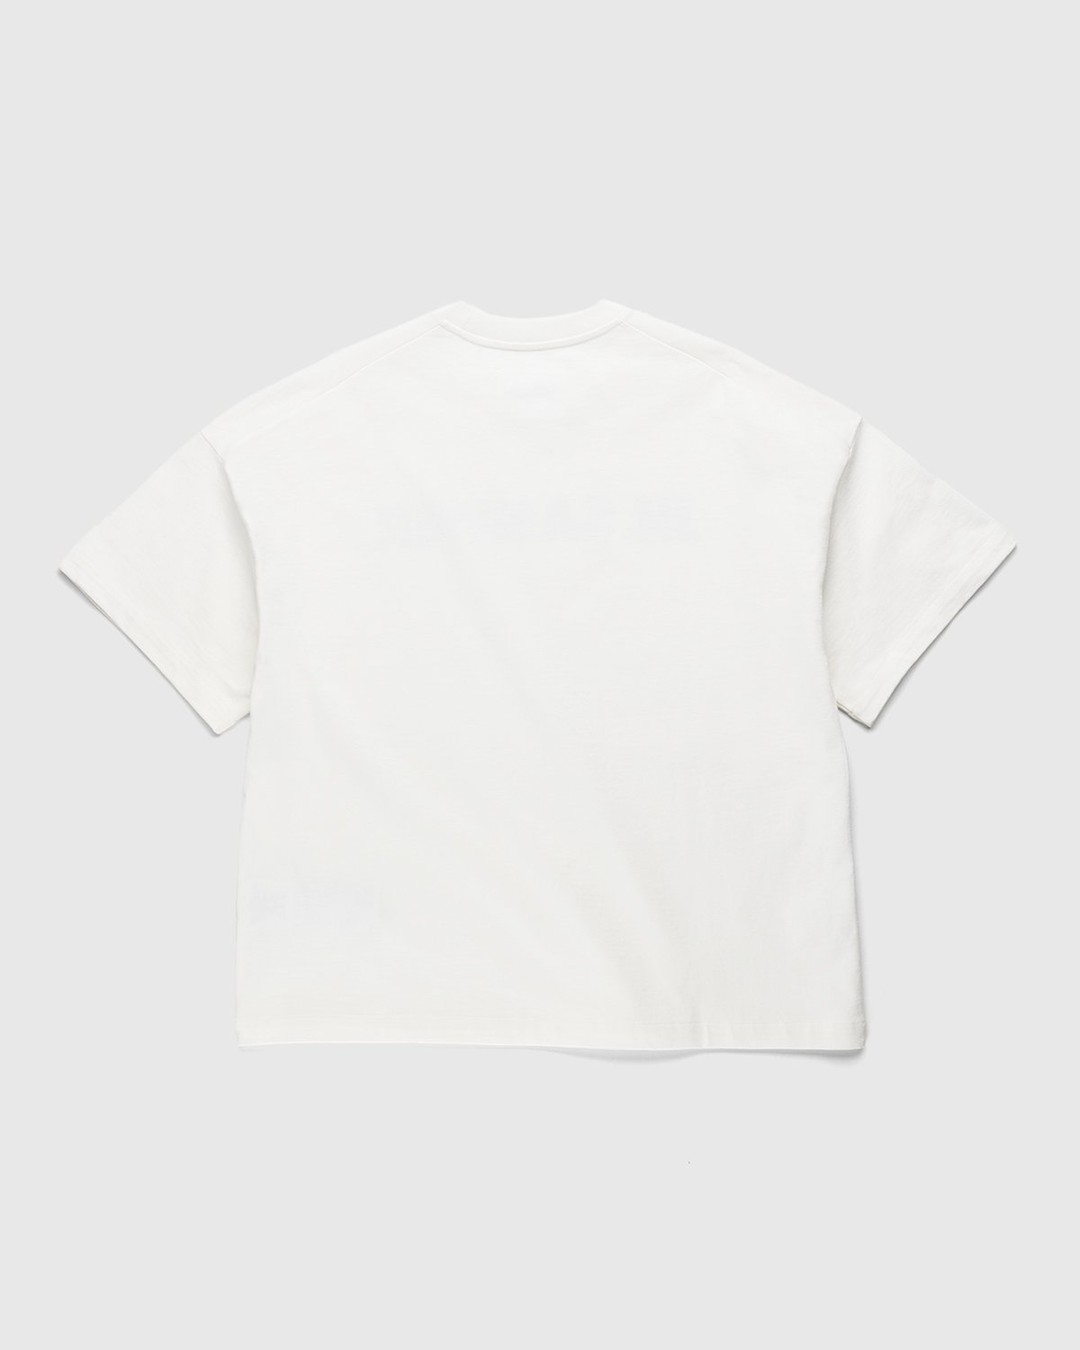 Jil Sander – Logo T-Shirt Natural - Tops - Beige - Image 2